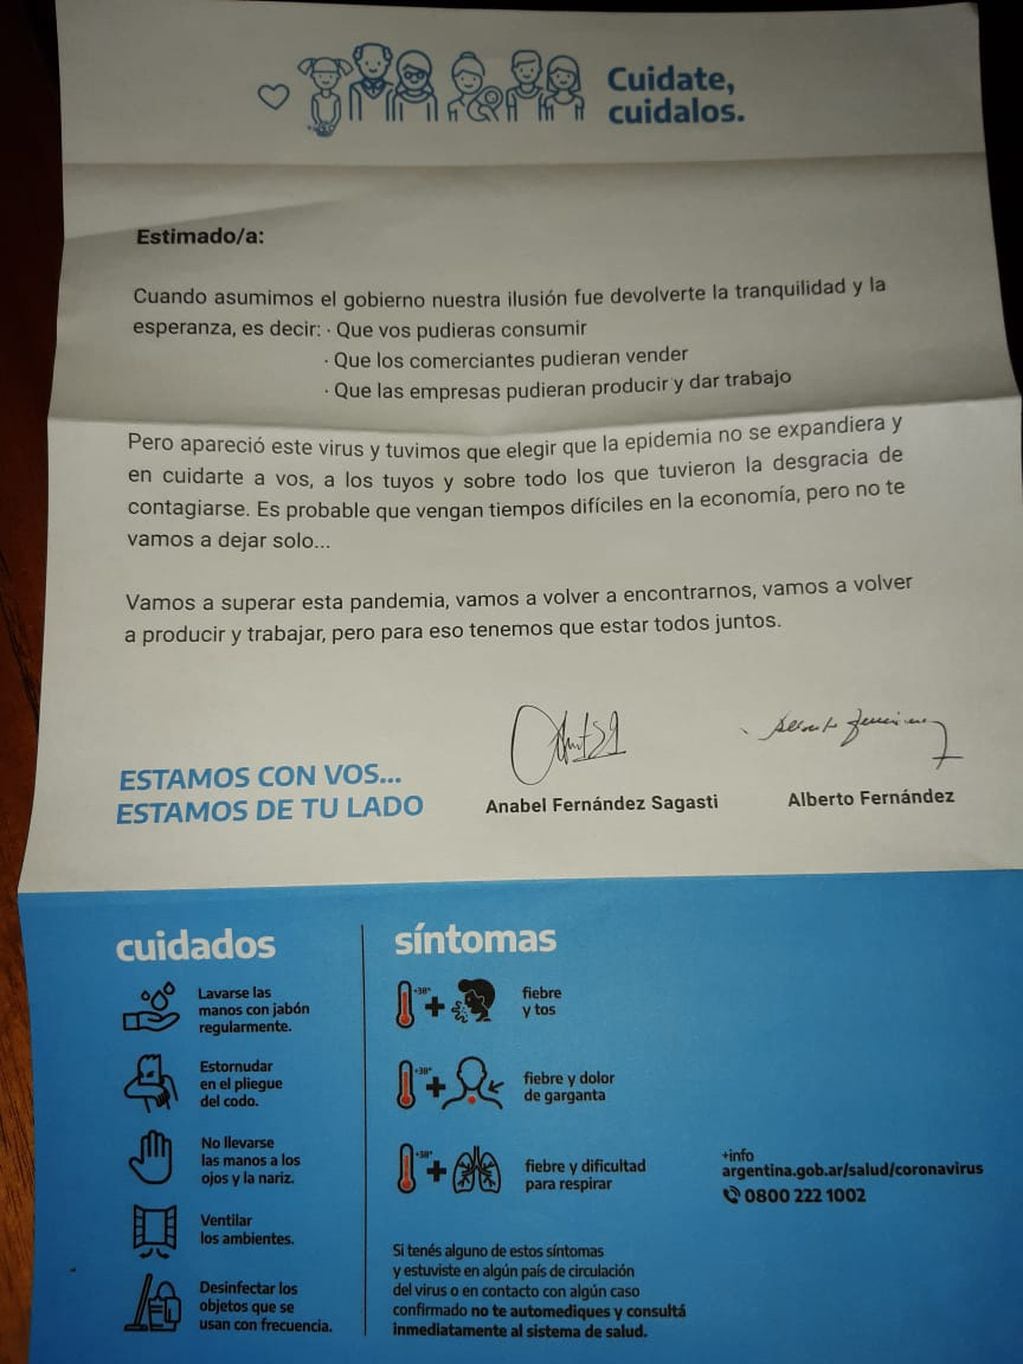 La carta, firmada por el presidente Alberto Fernández y la senadora nacional Anabel Fernández Sagasti